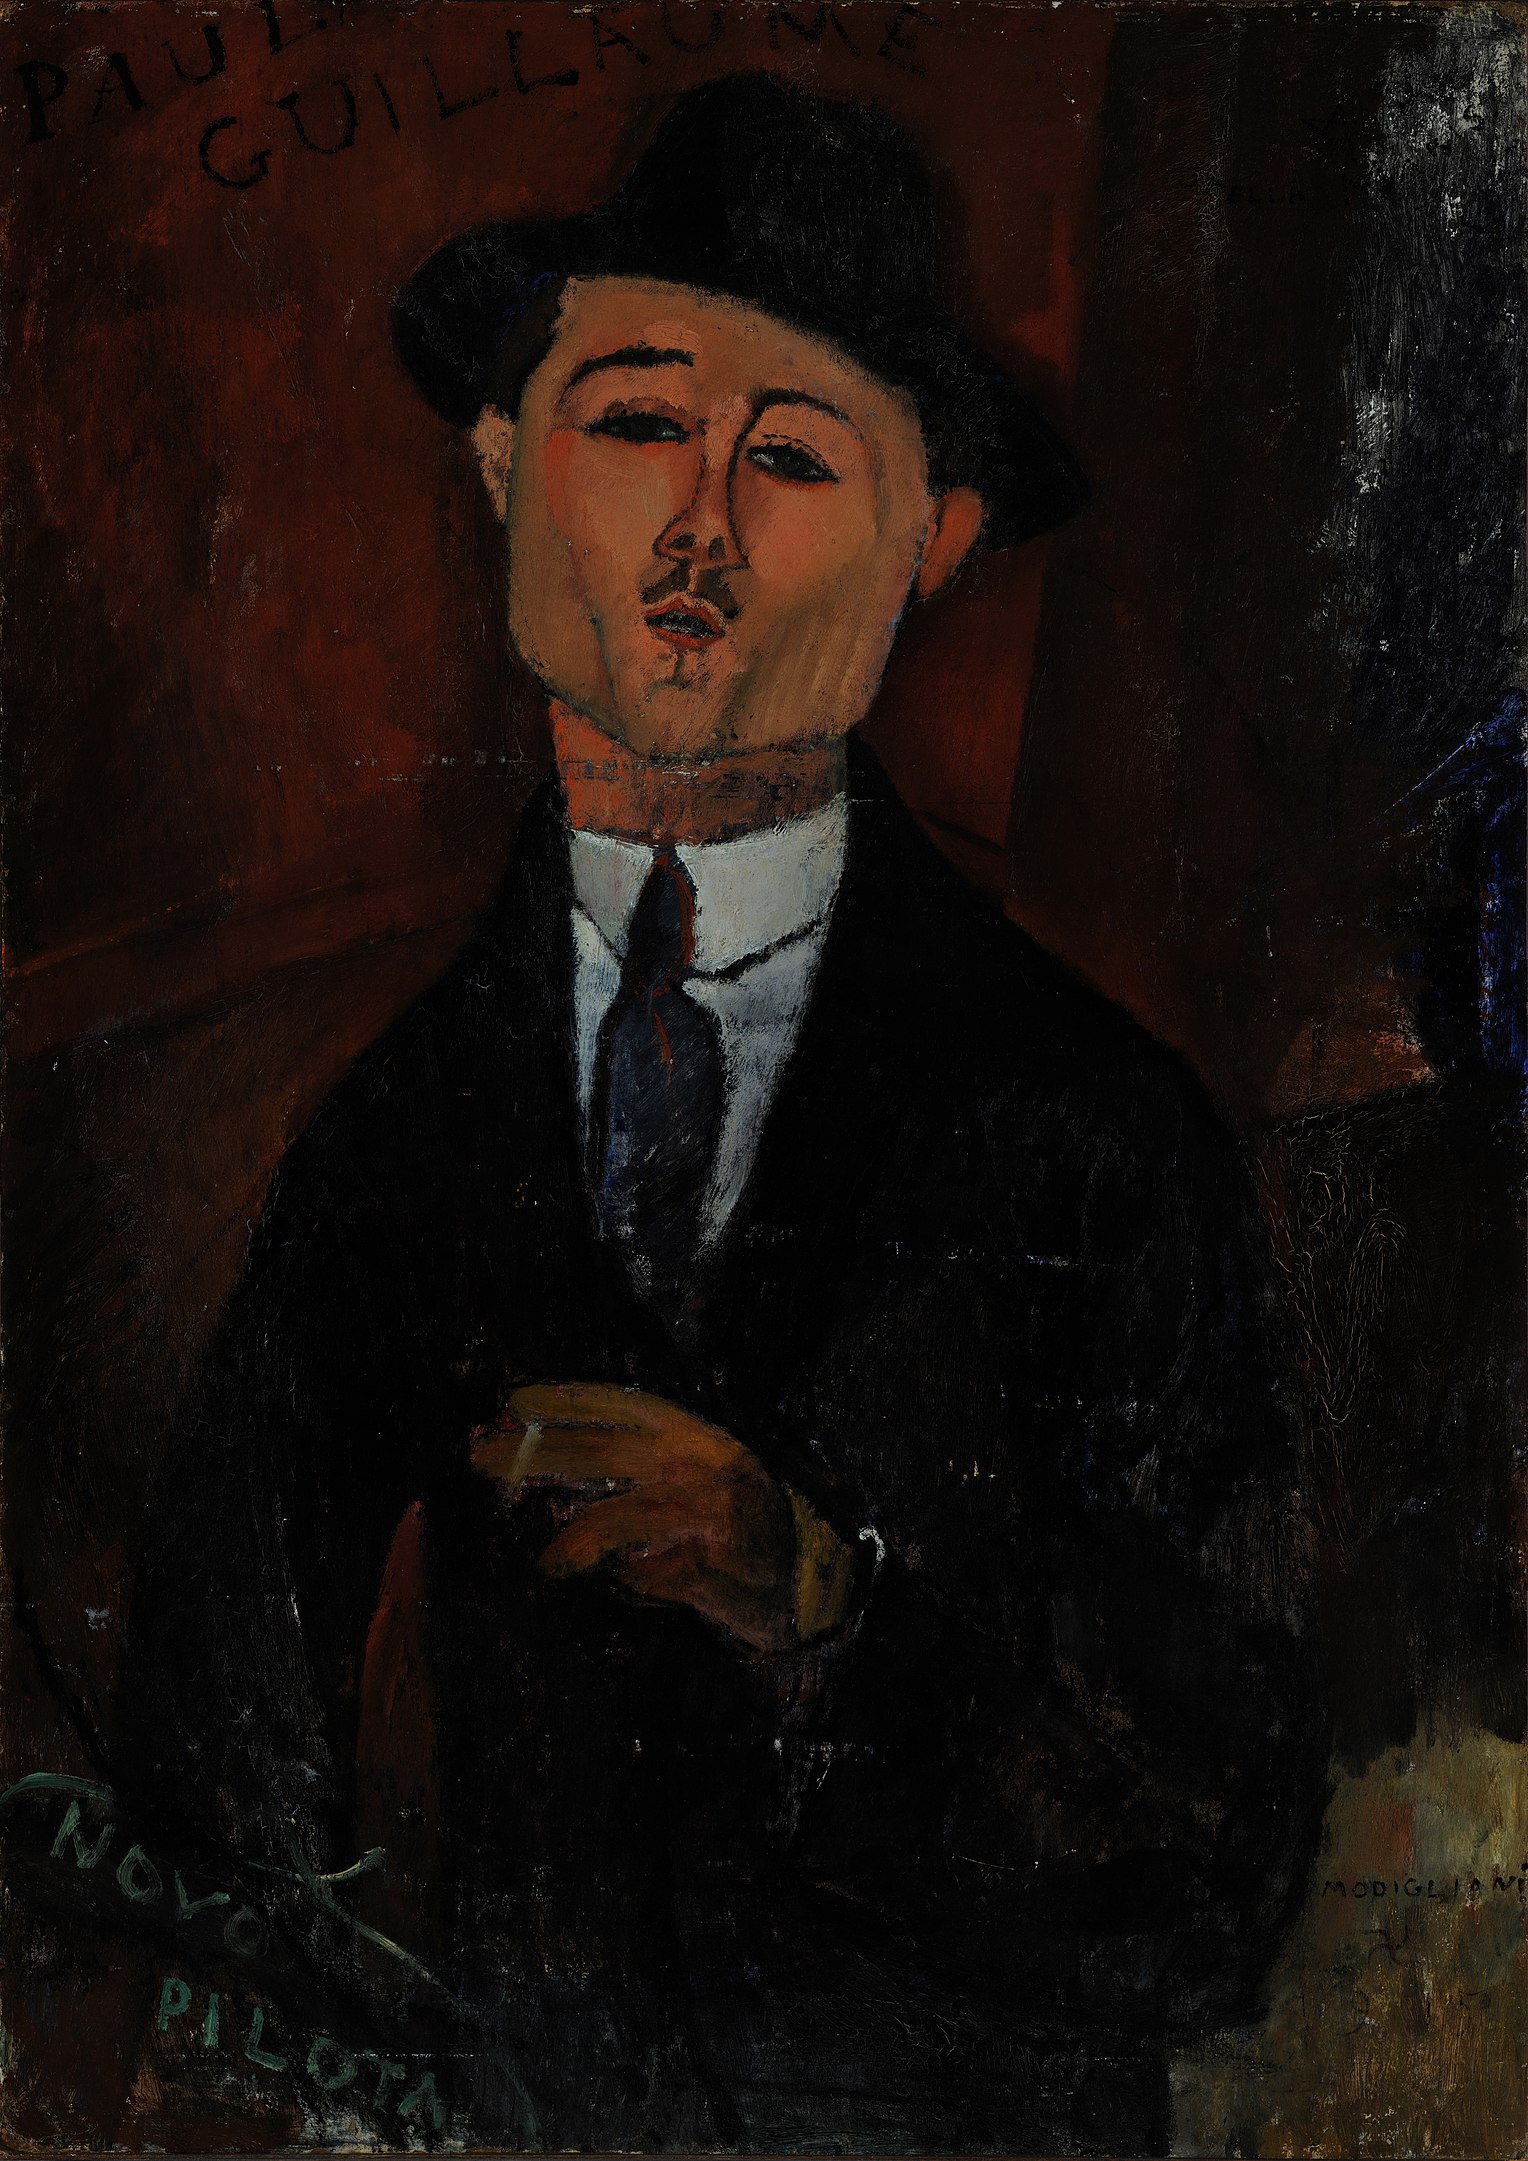 ポール・ギョームの肖像 by Amedeo Modigliani - 1915年 - 105 x 75 cm 